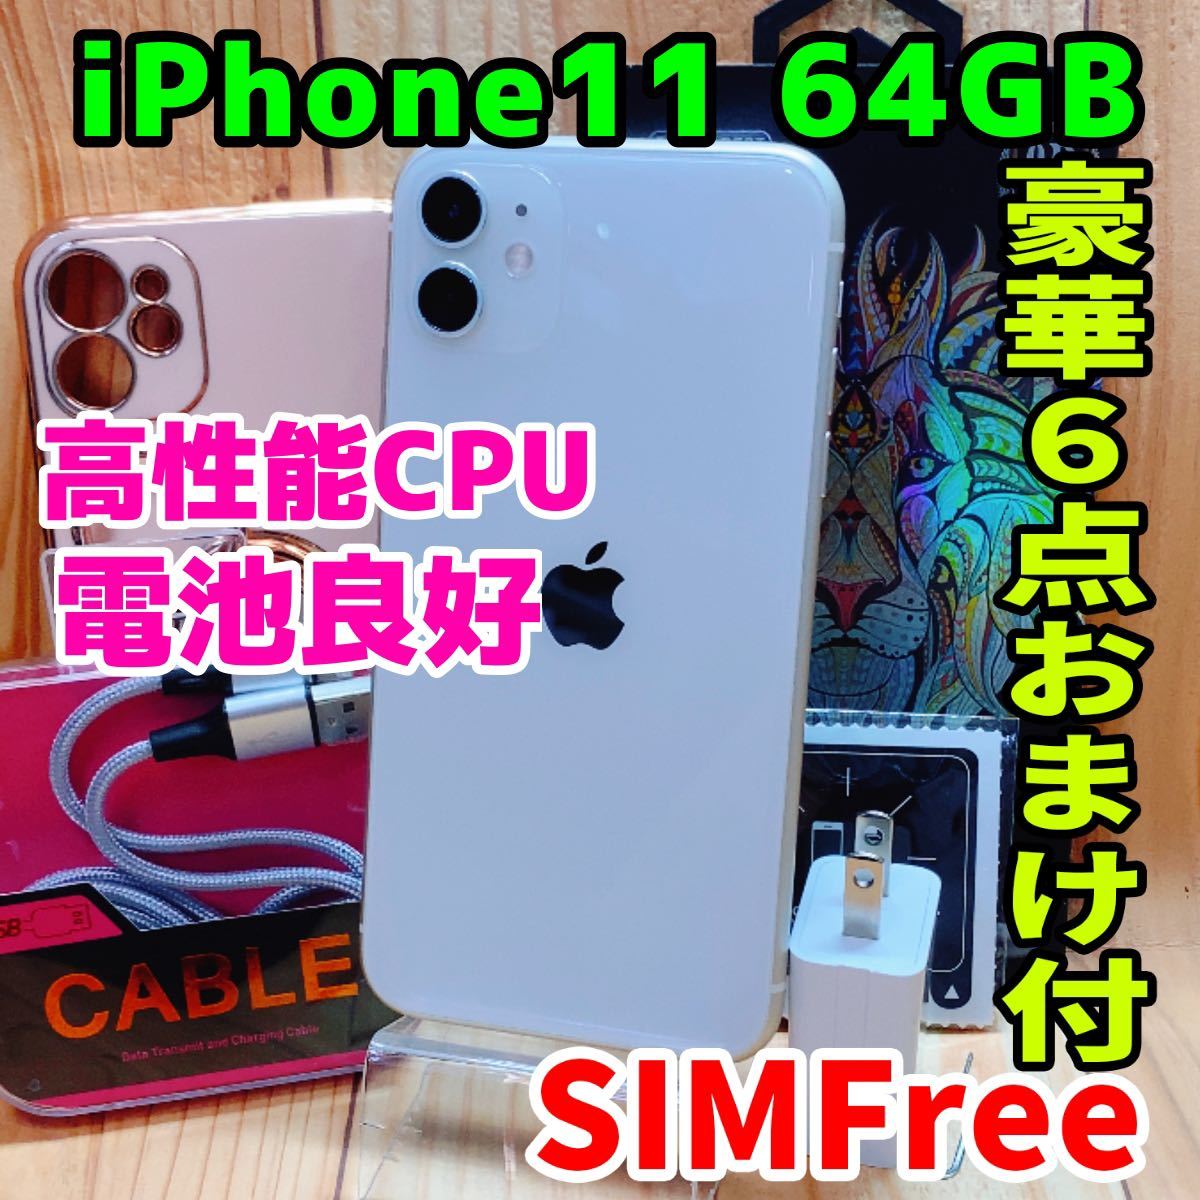 【期間限定お試し価格】 GB 64 11 iPhone 本体 SIMフリー 326 電池良好 ホワイト iPhone